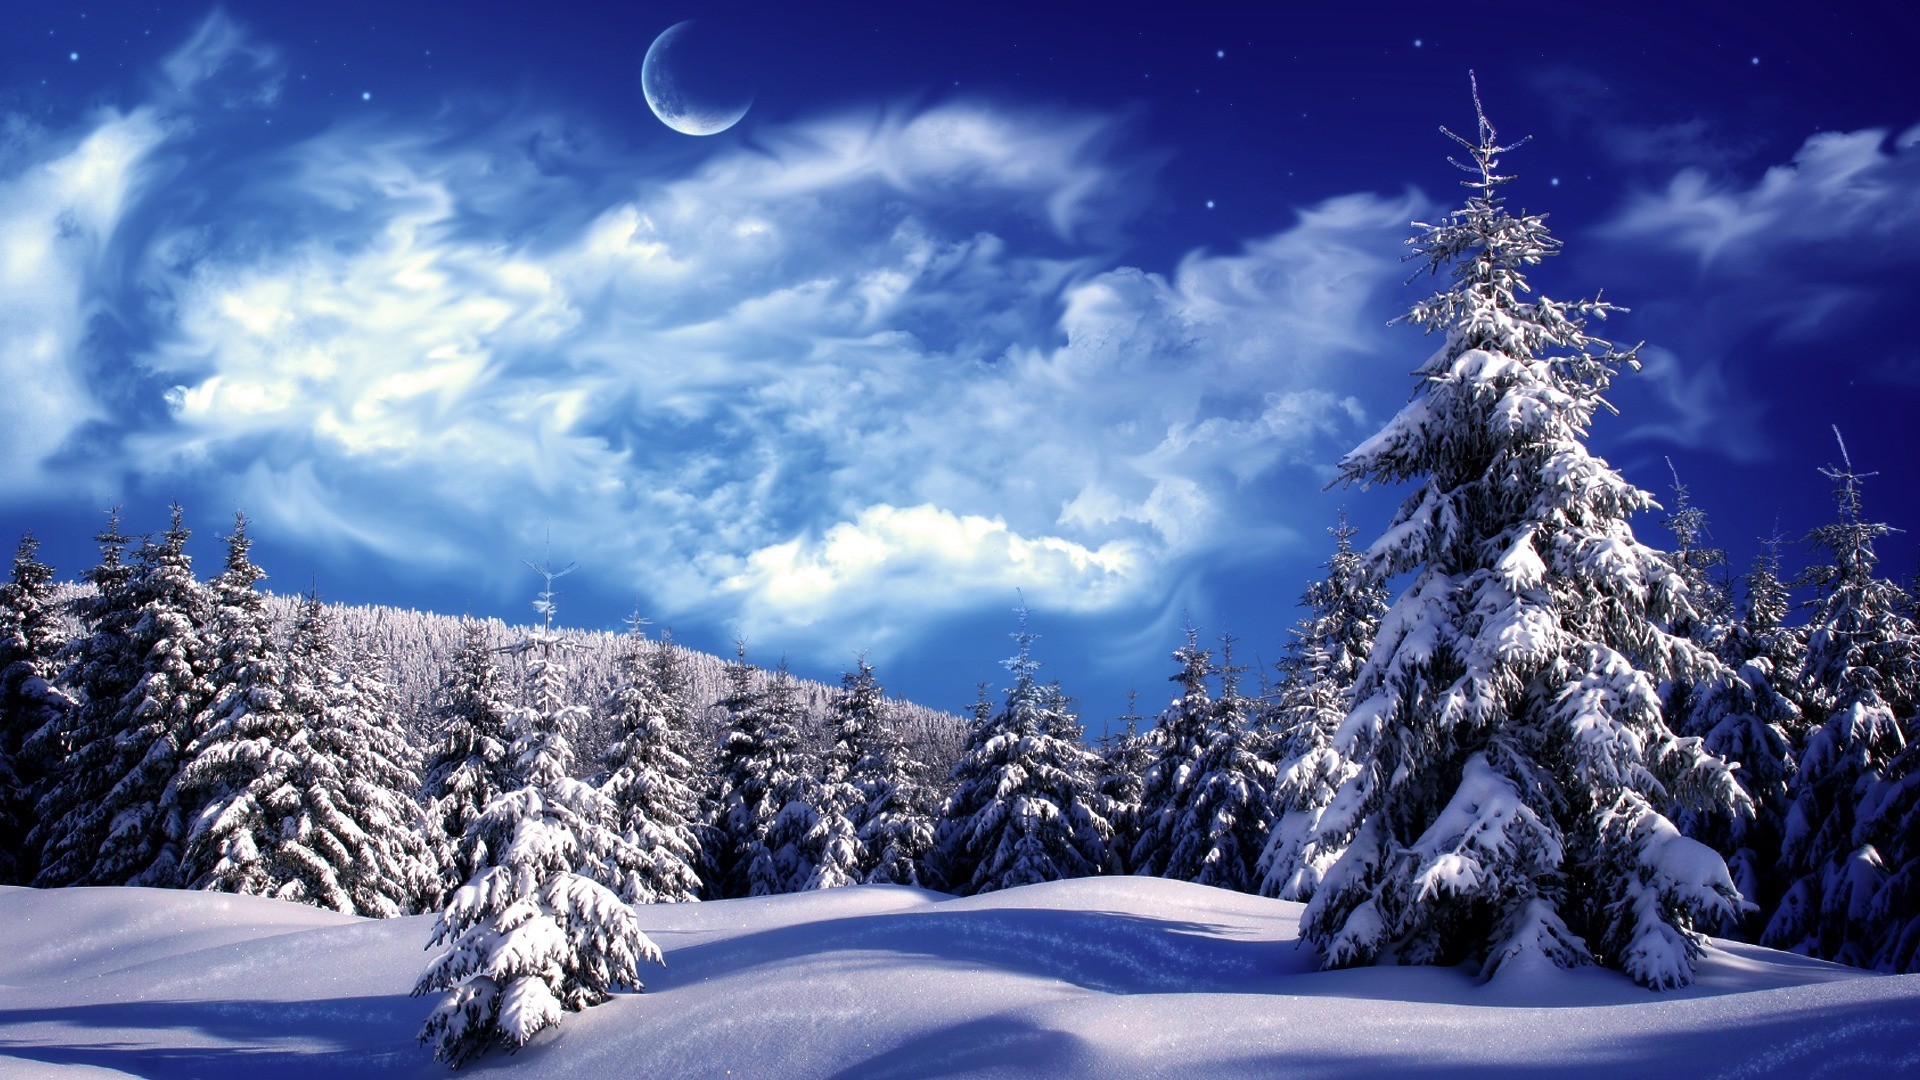 1920x1080 Snow Landscape winter season free hd wallpapers for desktop hd wallpaper